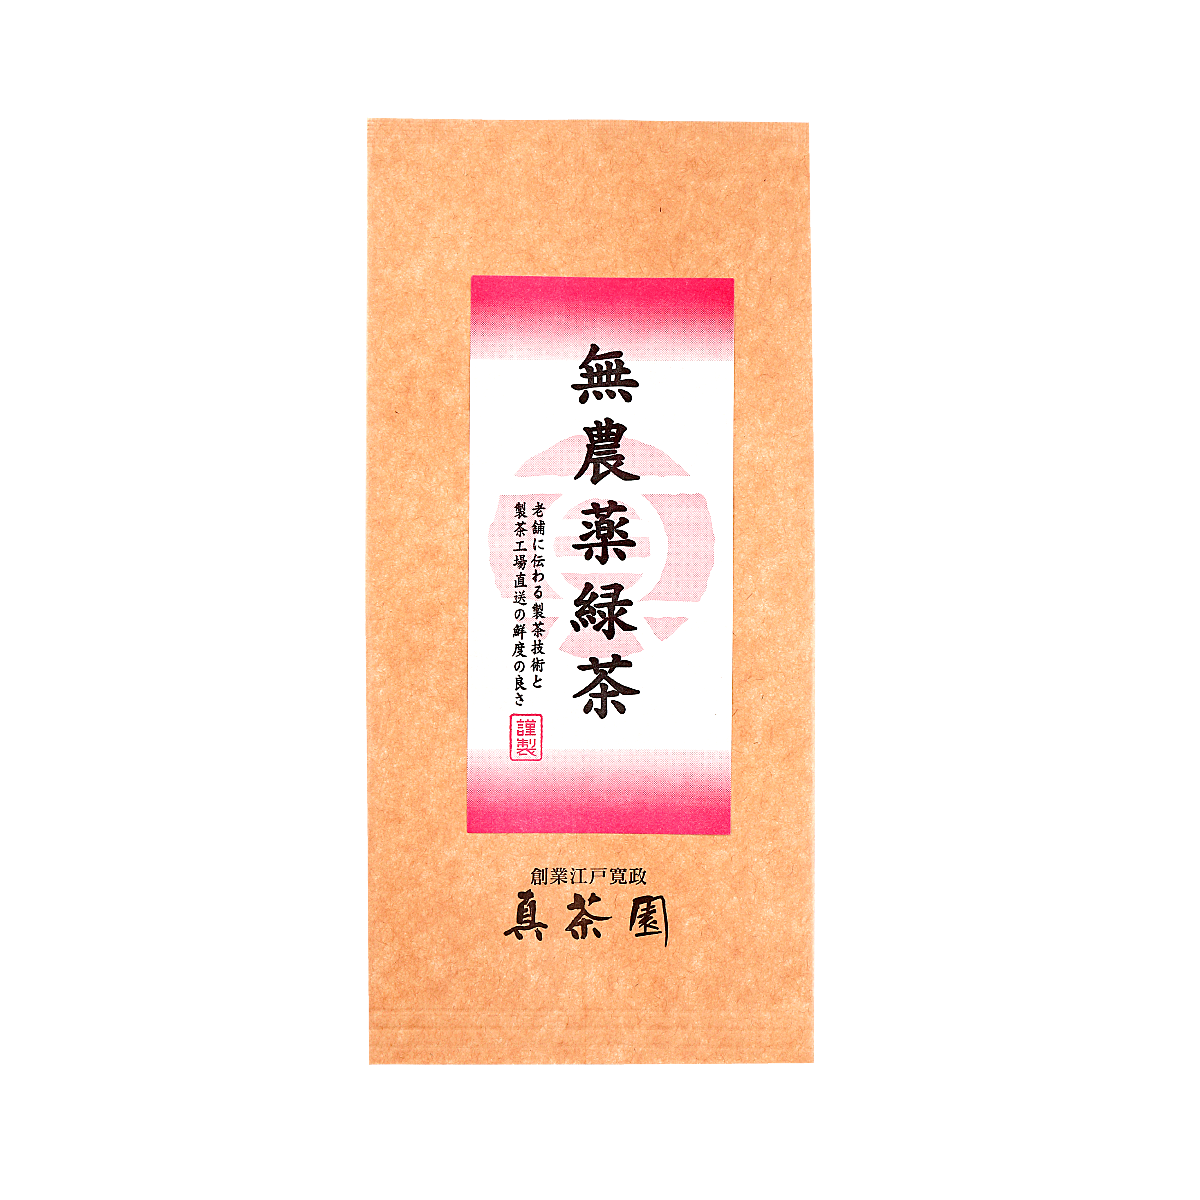 【新茶・出荷予定日は5月23日】無農薬緑茶 特上 50g